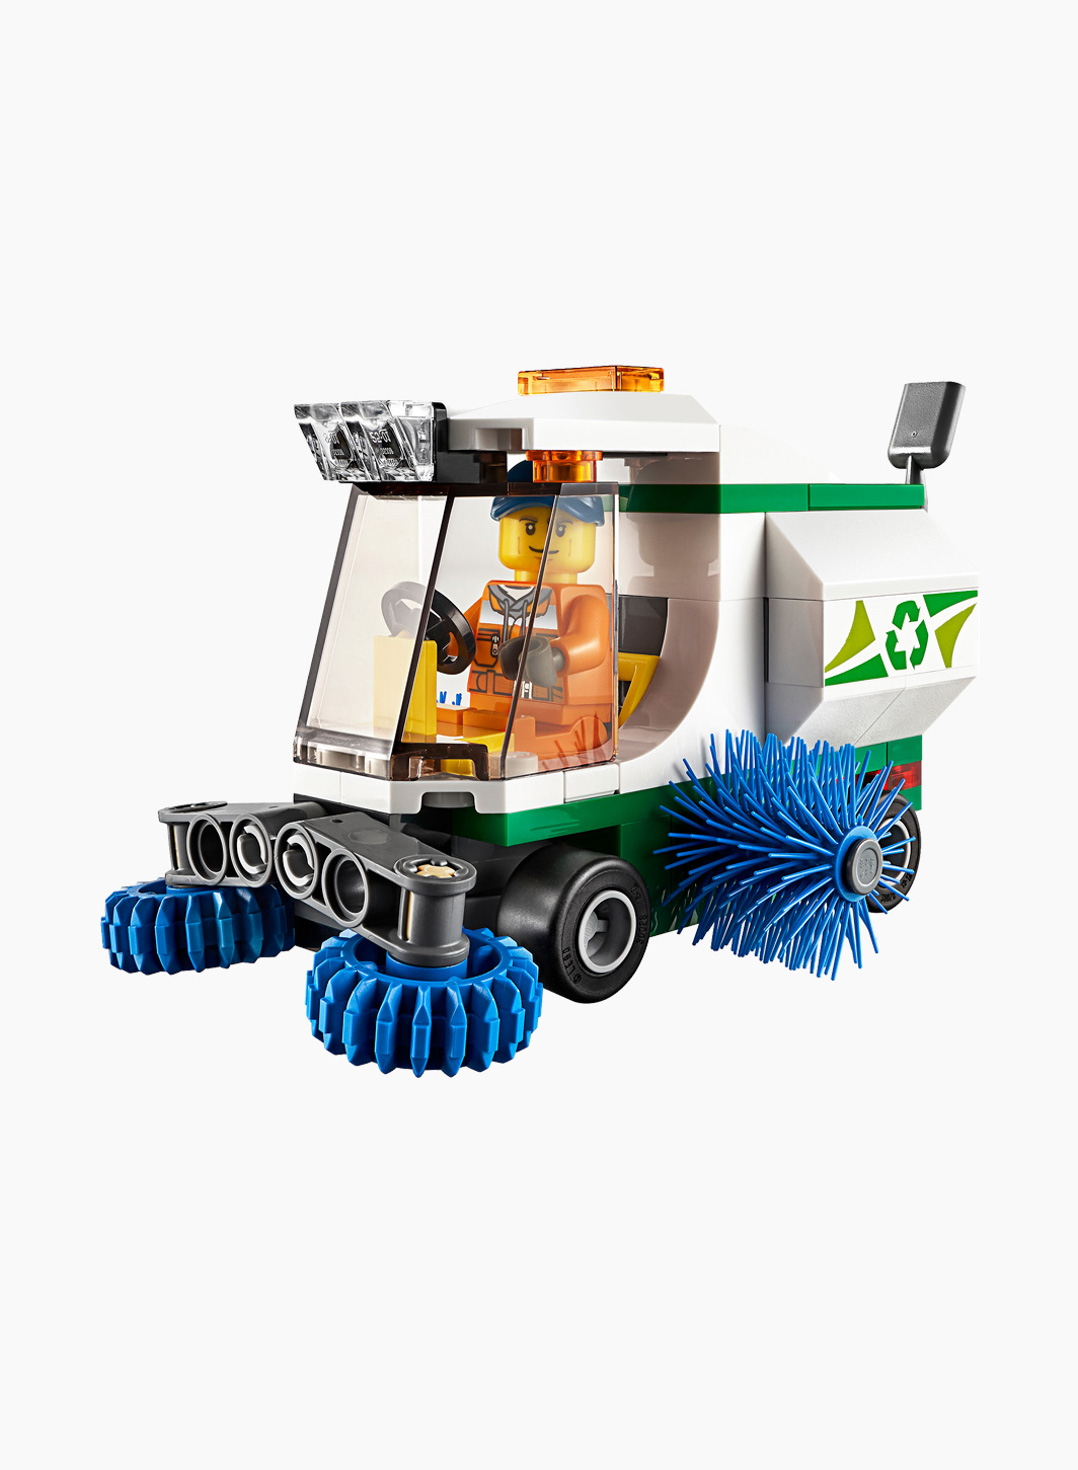 Lego City Конструктор Машина для очистки улиц